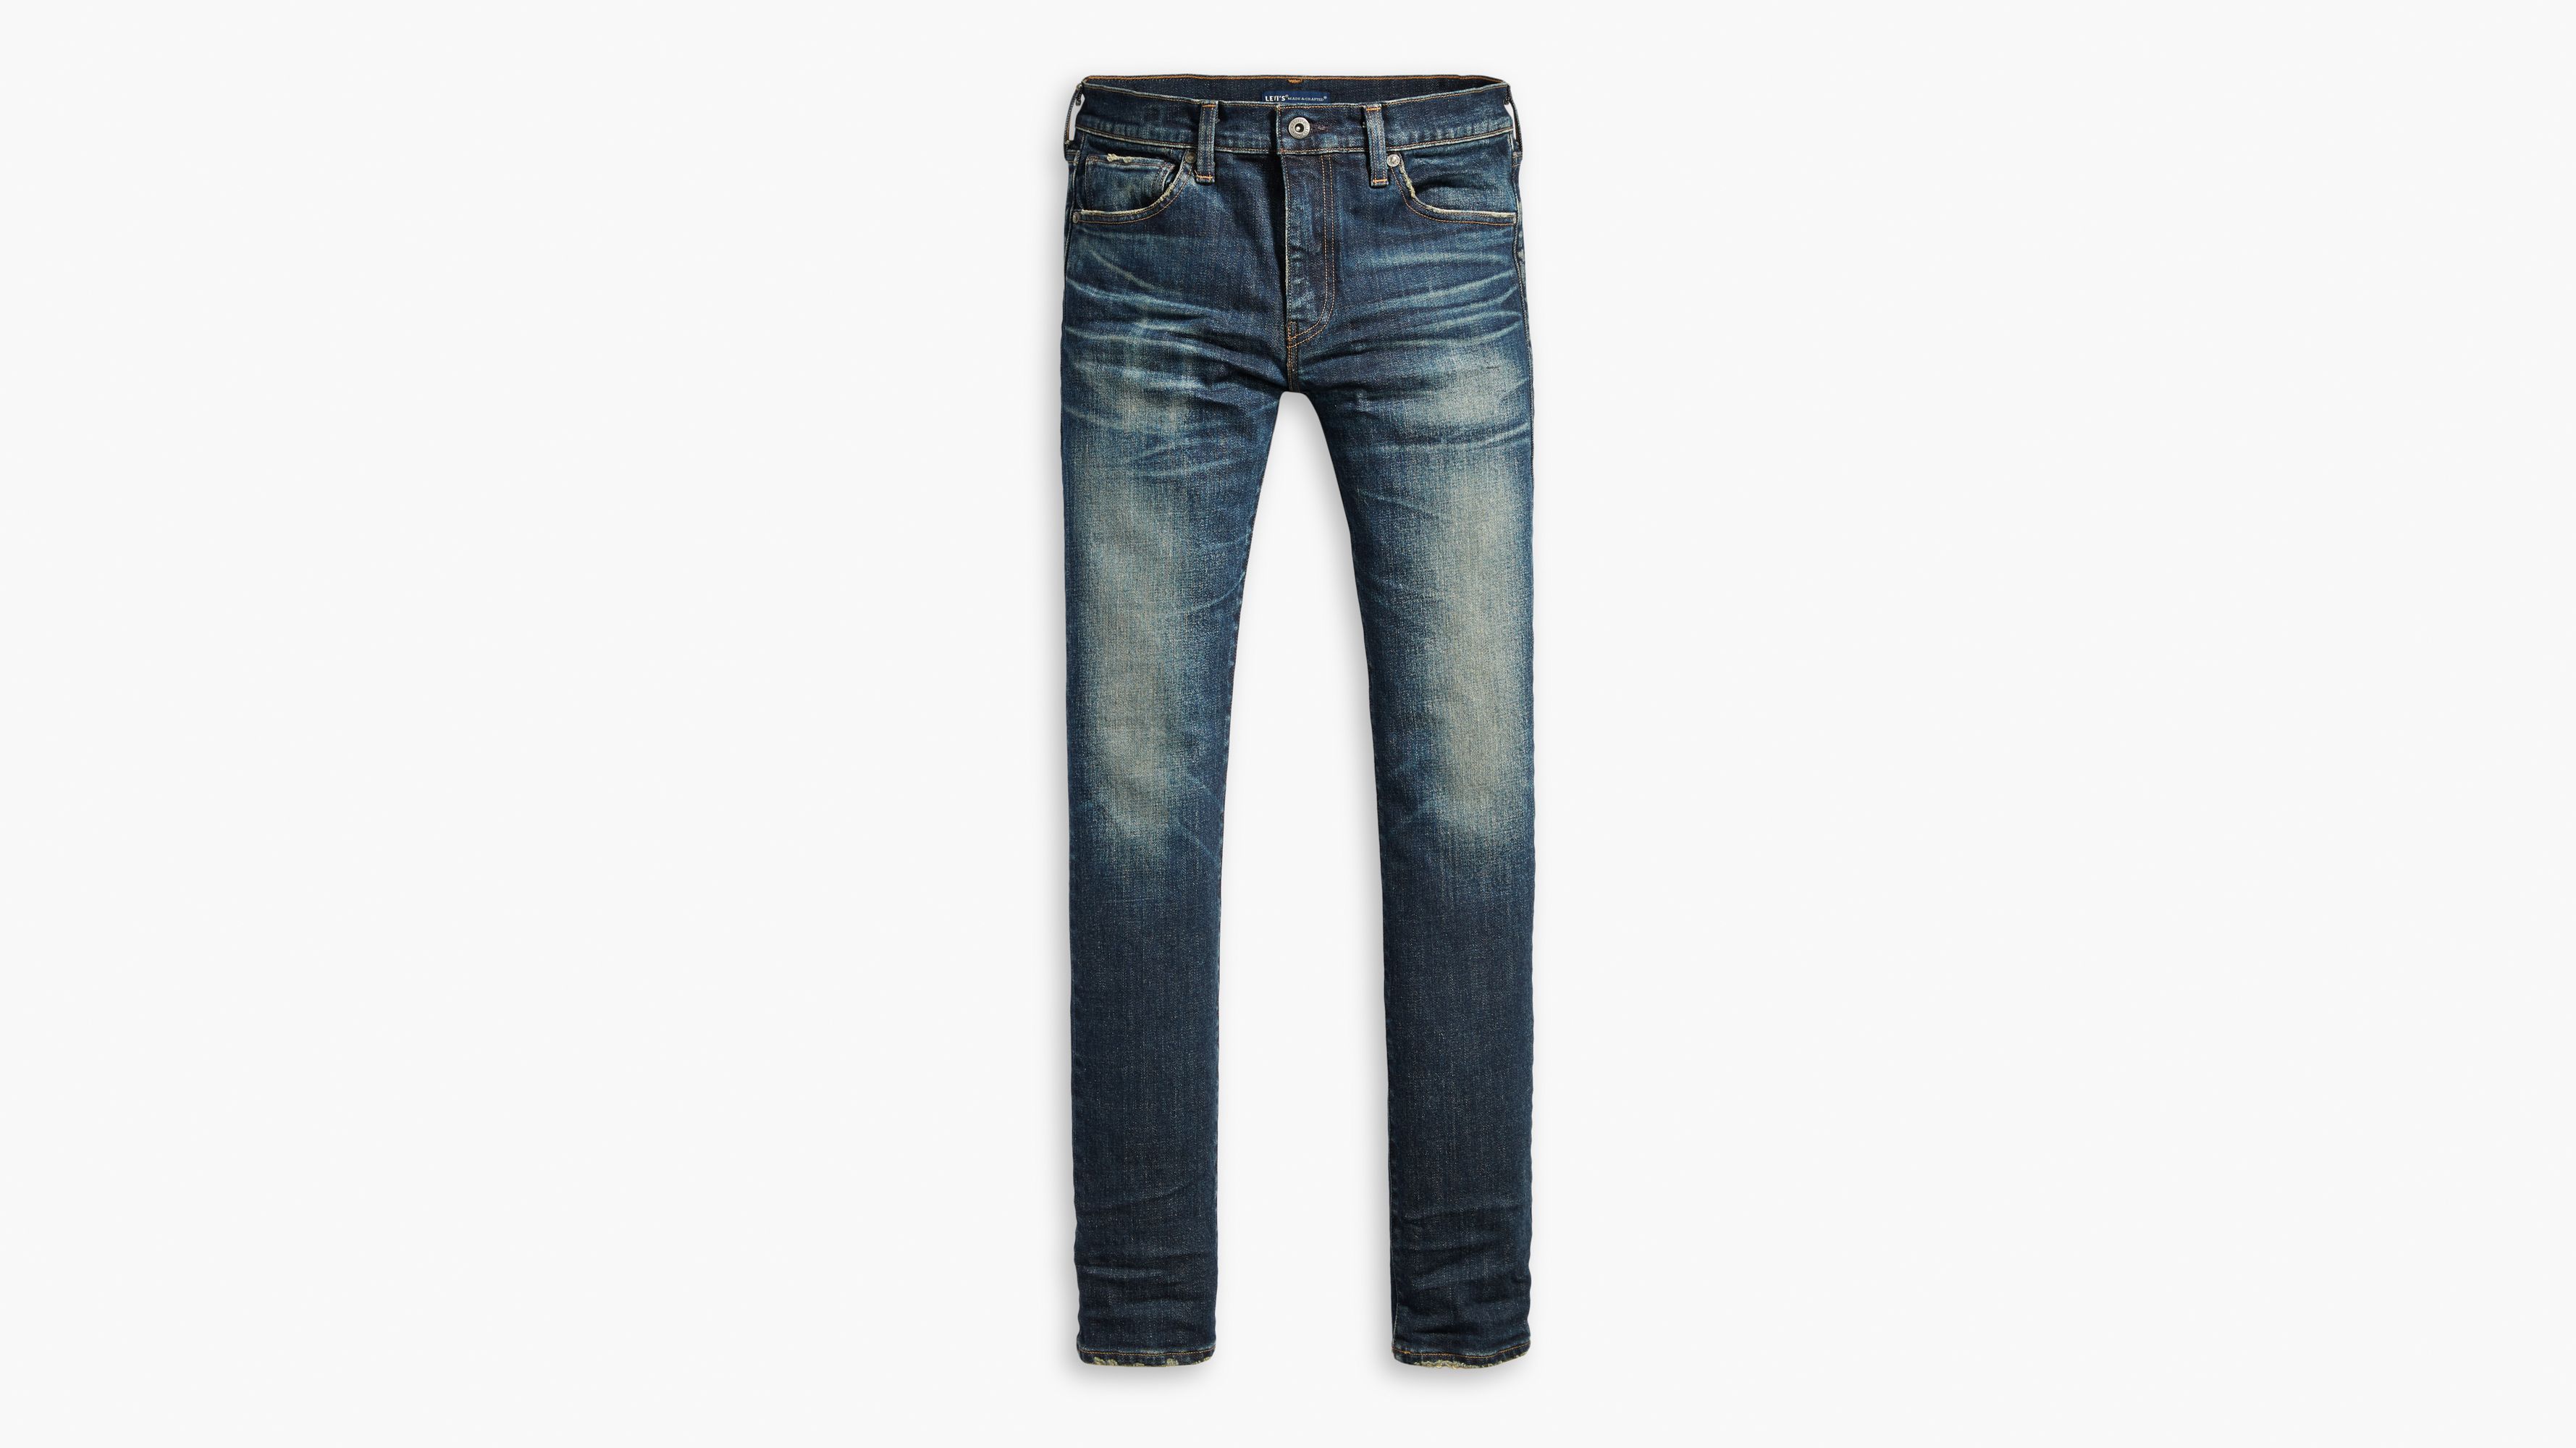 511 levis jeans sale